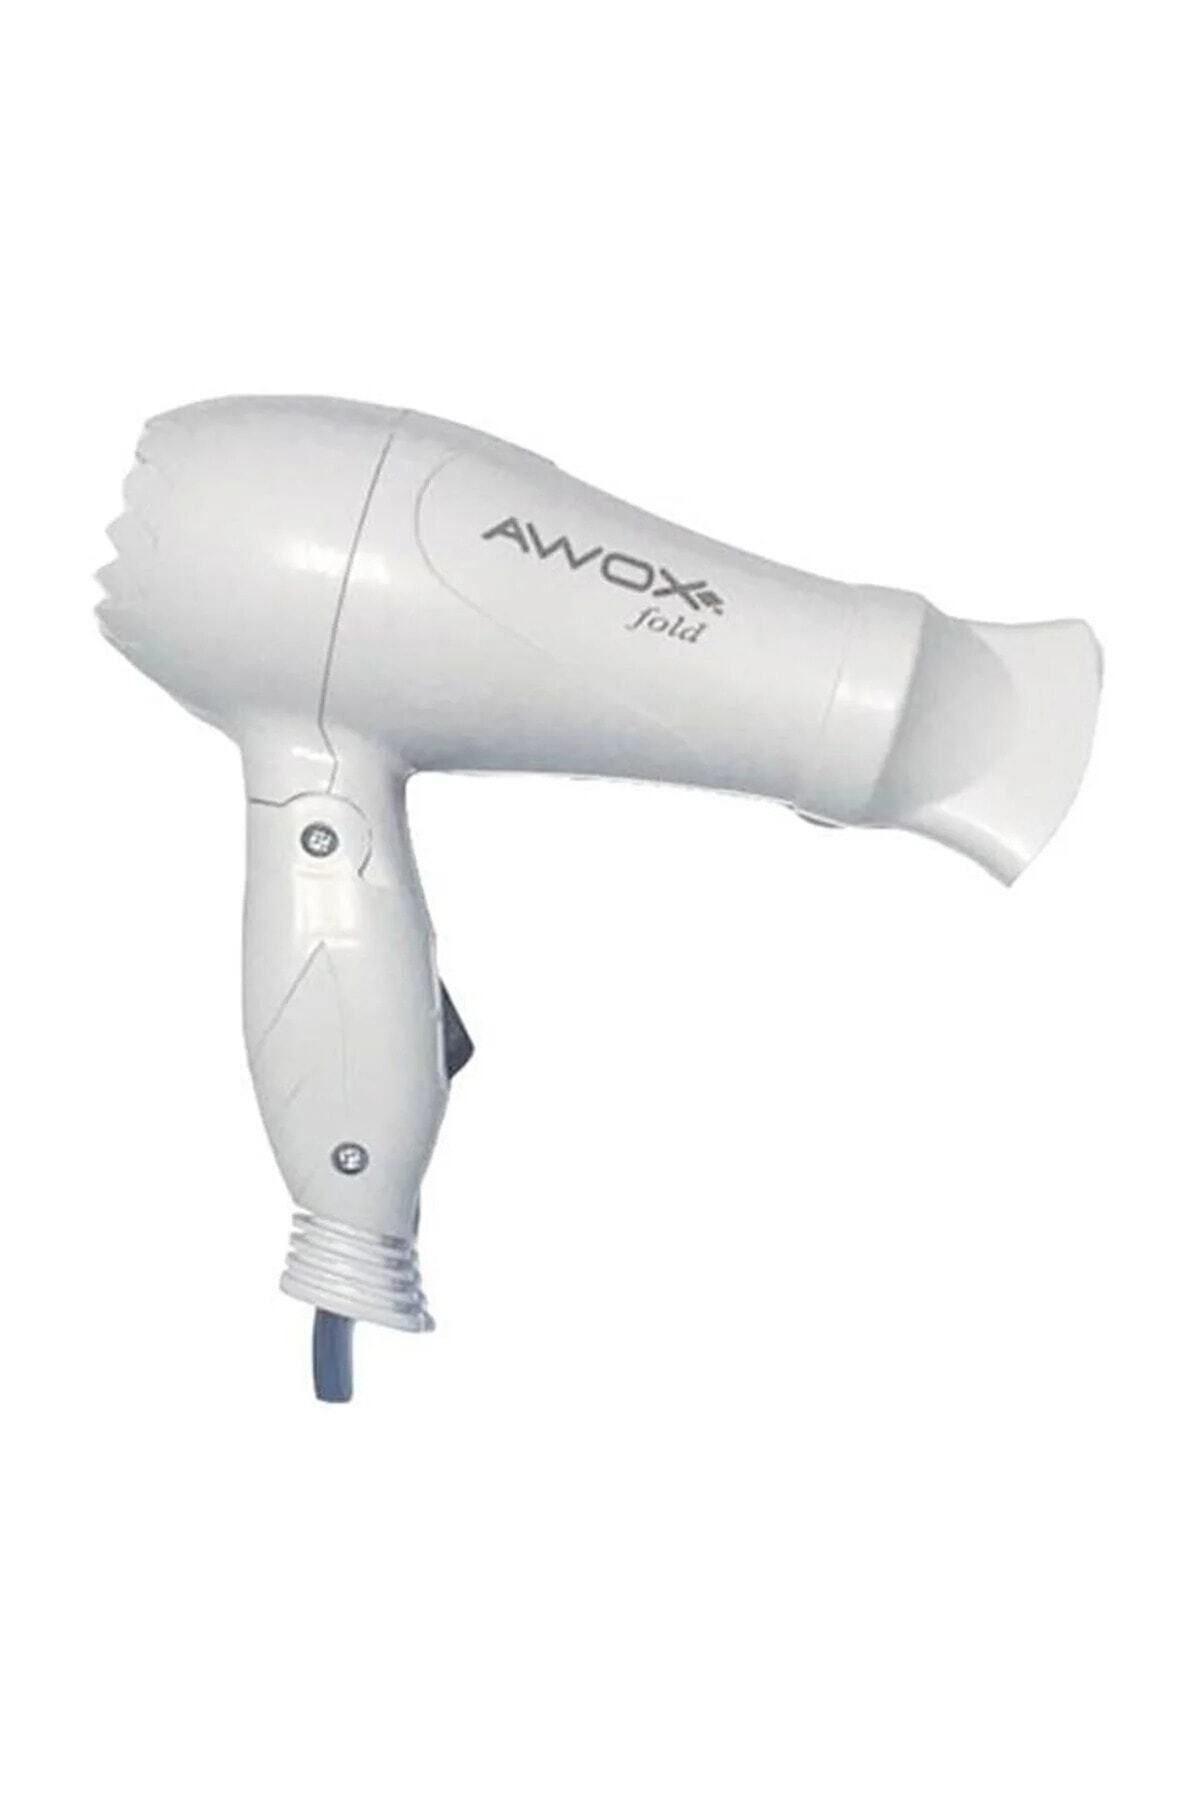 Genel Markalar Awox Fold Katlanabilir Seyehat Tipi Mini Saç Kurutma Makinesi Beyaz